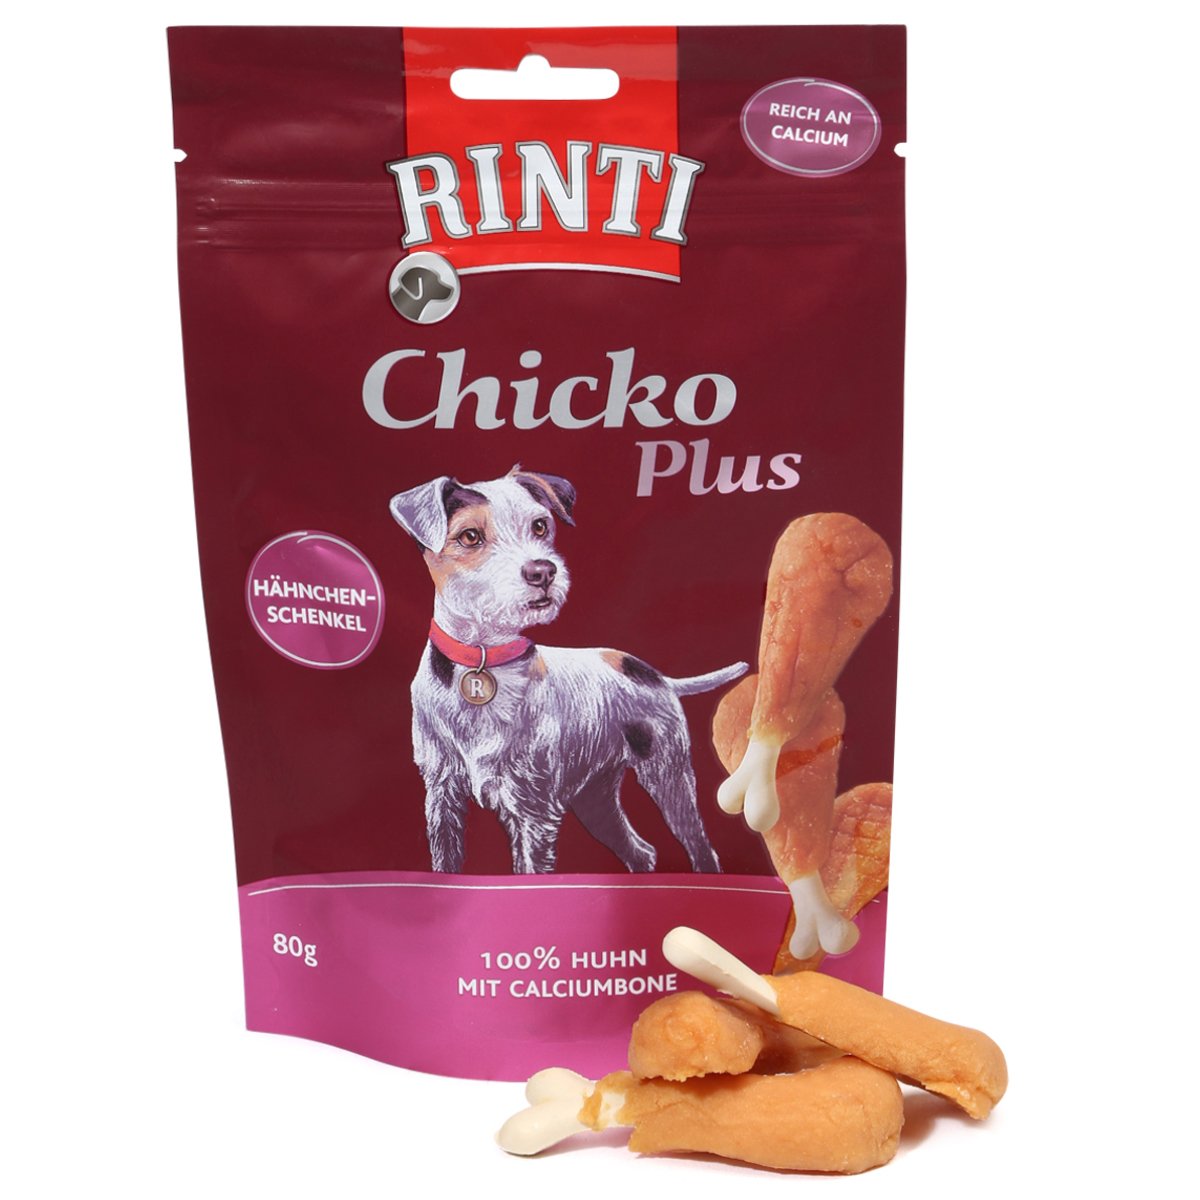 RINTI Extra Chicko Plus Hähnchenschenkel mit Calcium 6x80g